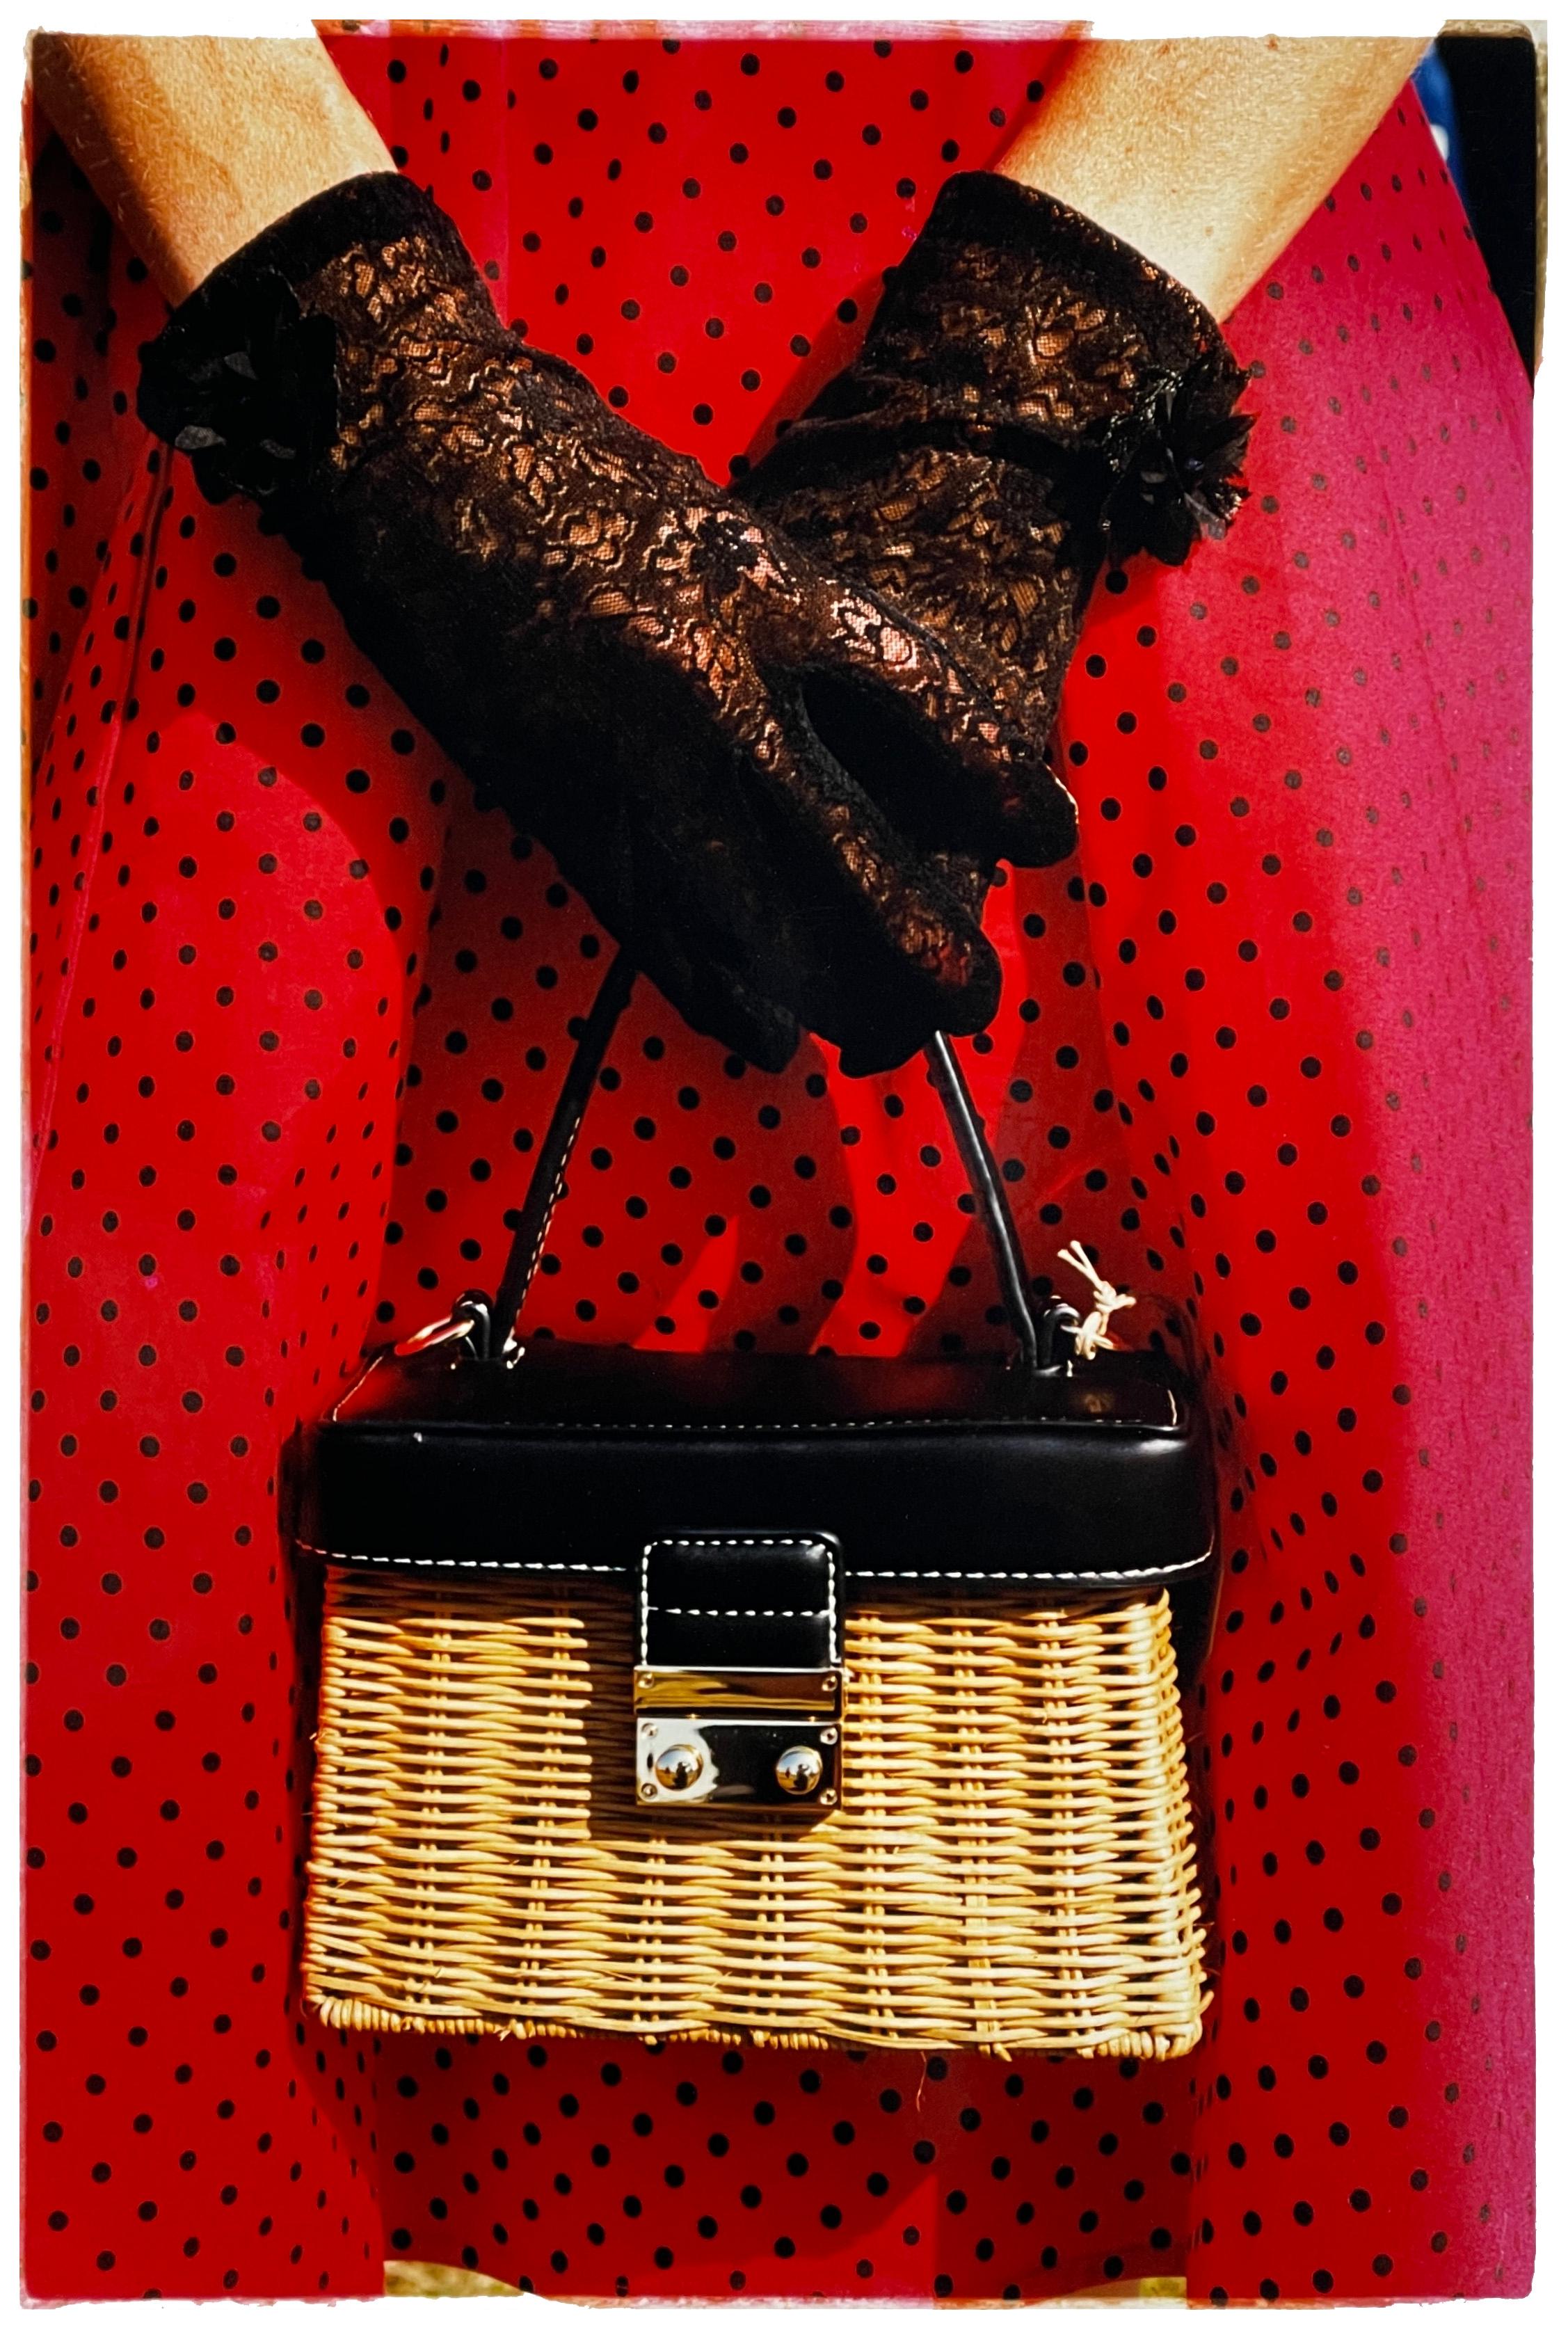 Robe à pois rouges, style néo-gothique Goodwood, photographie de mode vintage